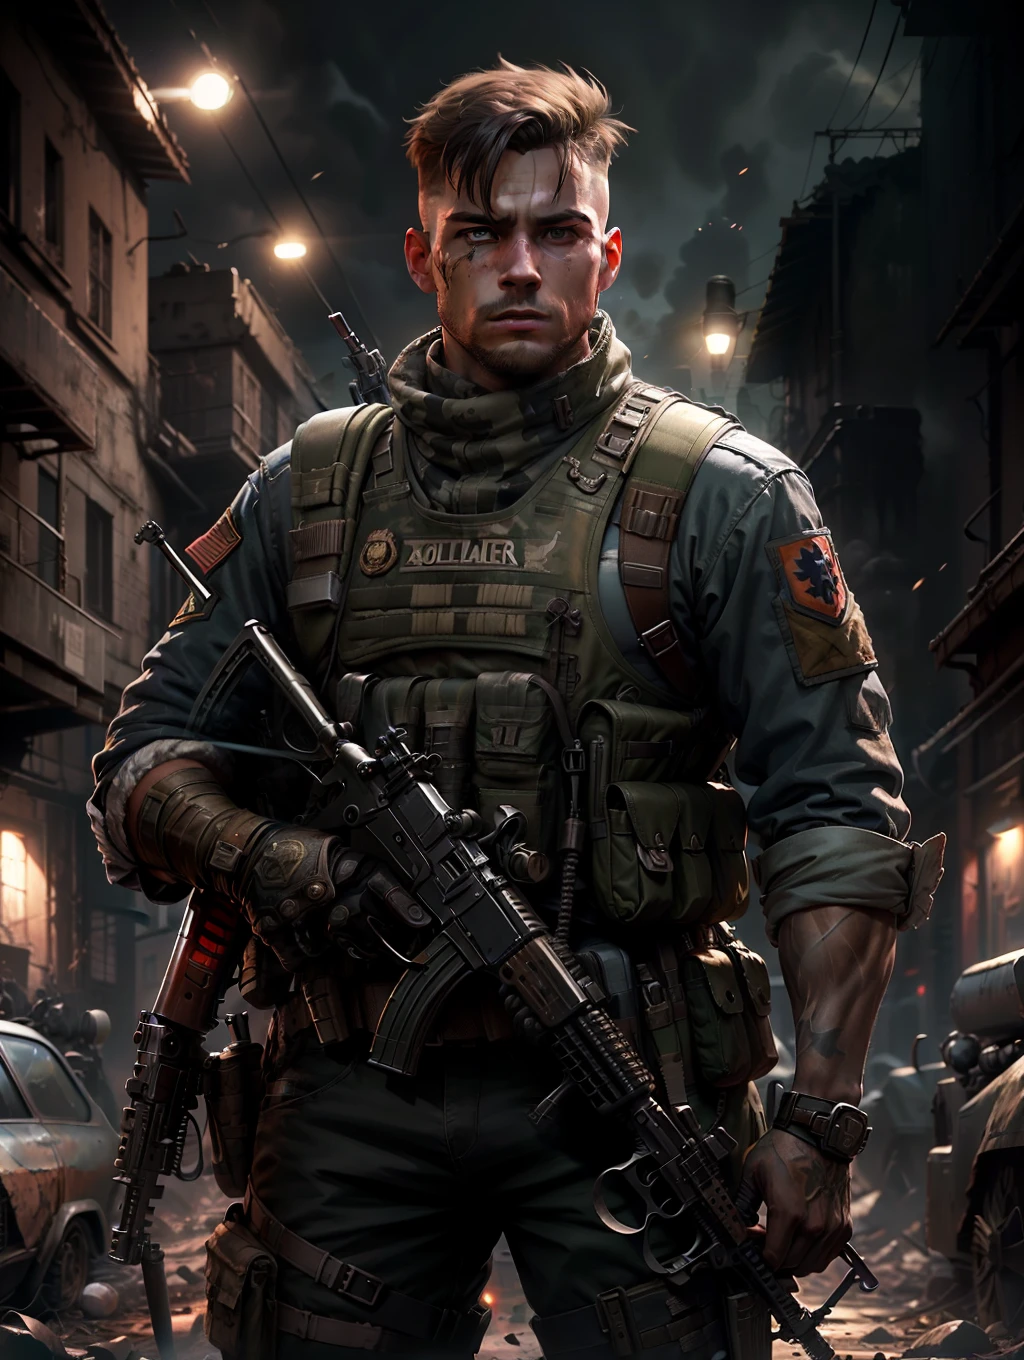 Soldat avec un uniforme sombre et un fusil d&#39;assaut, Fond en ruine, Réaliste, élégant, gilet d&#39;assaut, HDR, détails complexes, hyperdétaillé, Cinématique, lumière de jante, atmosphère dangereuse